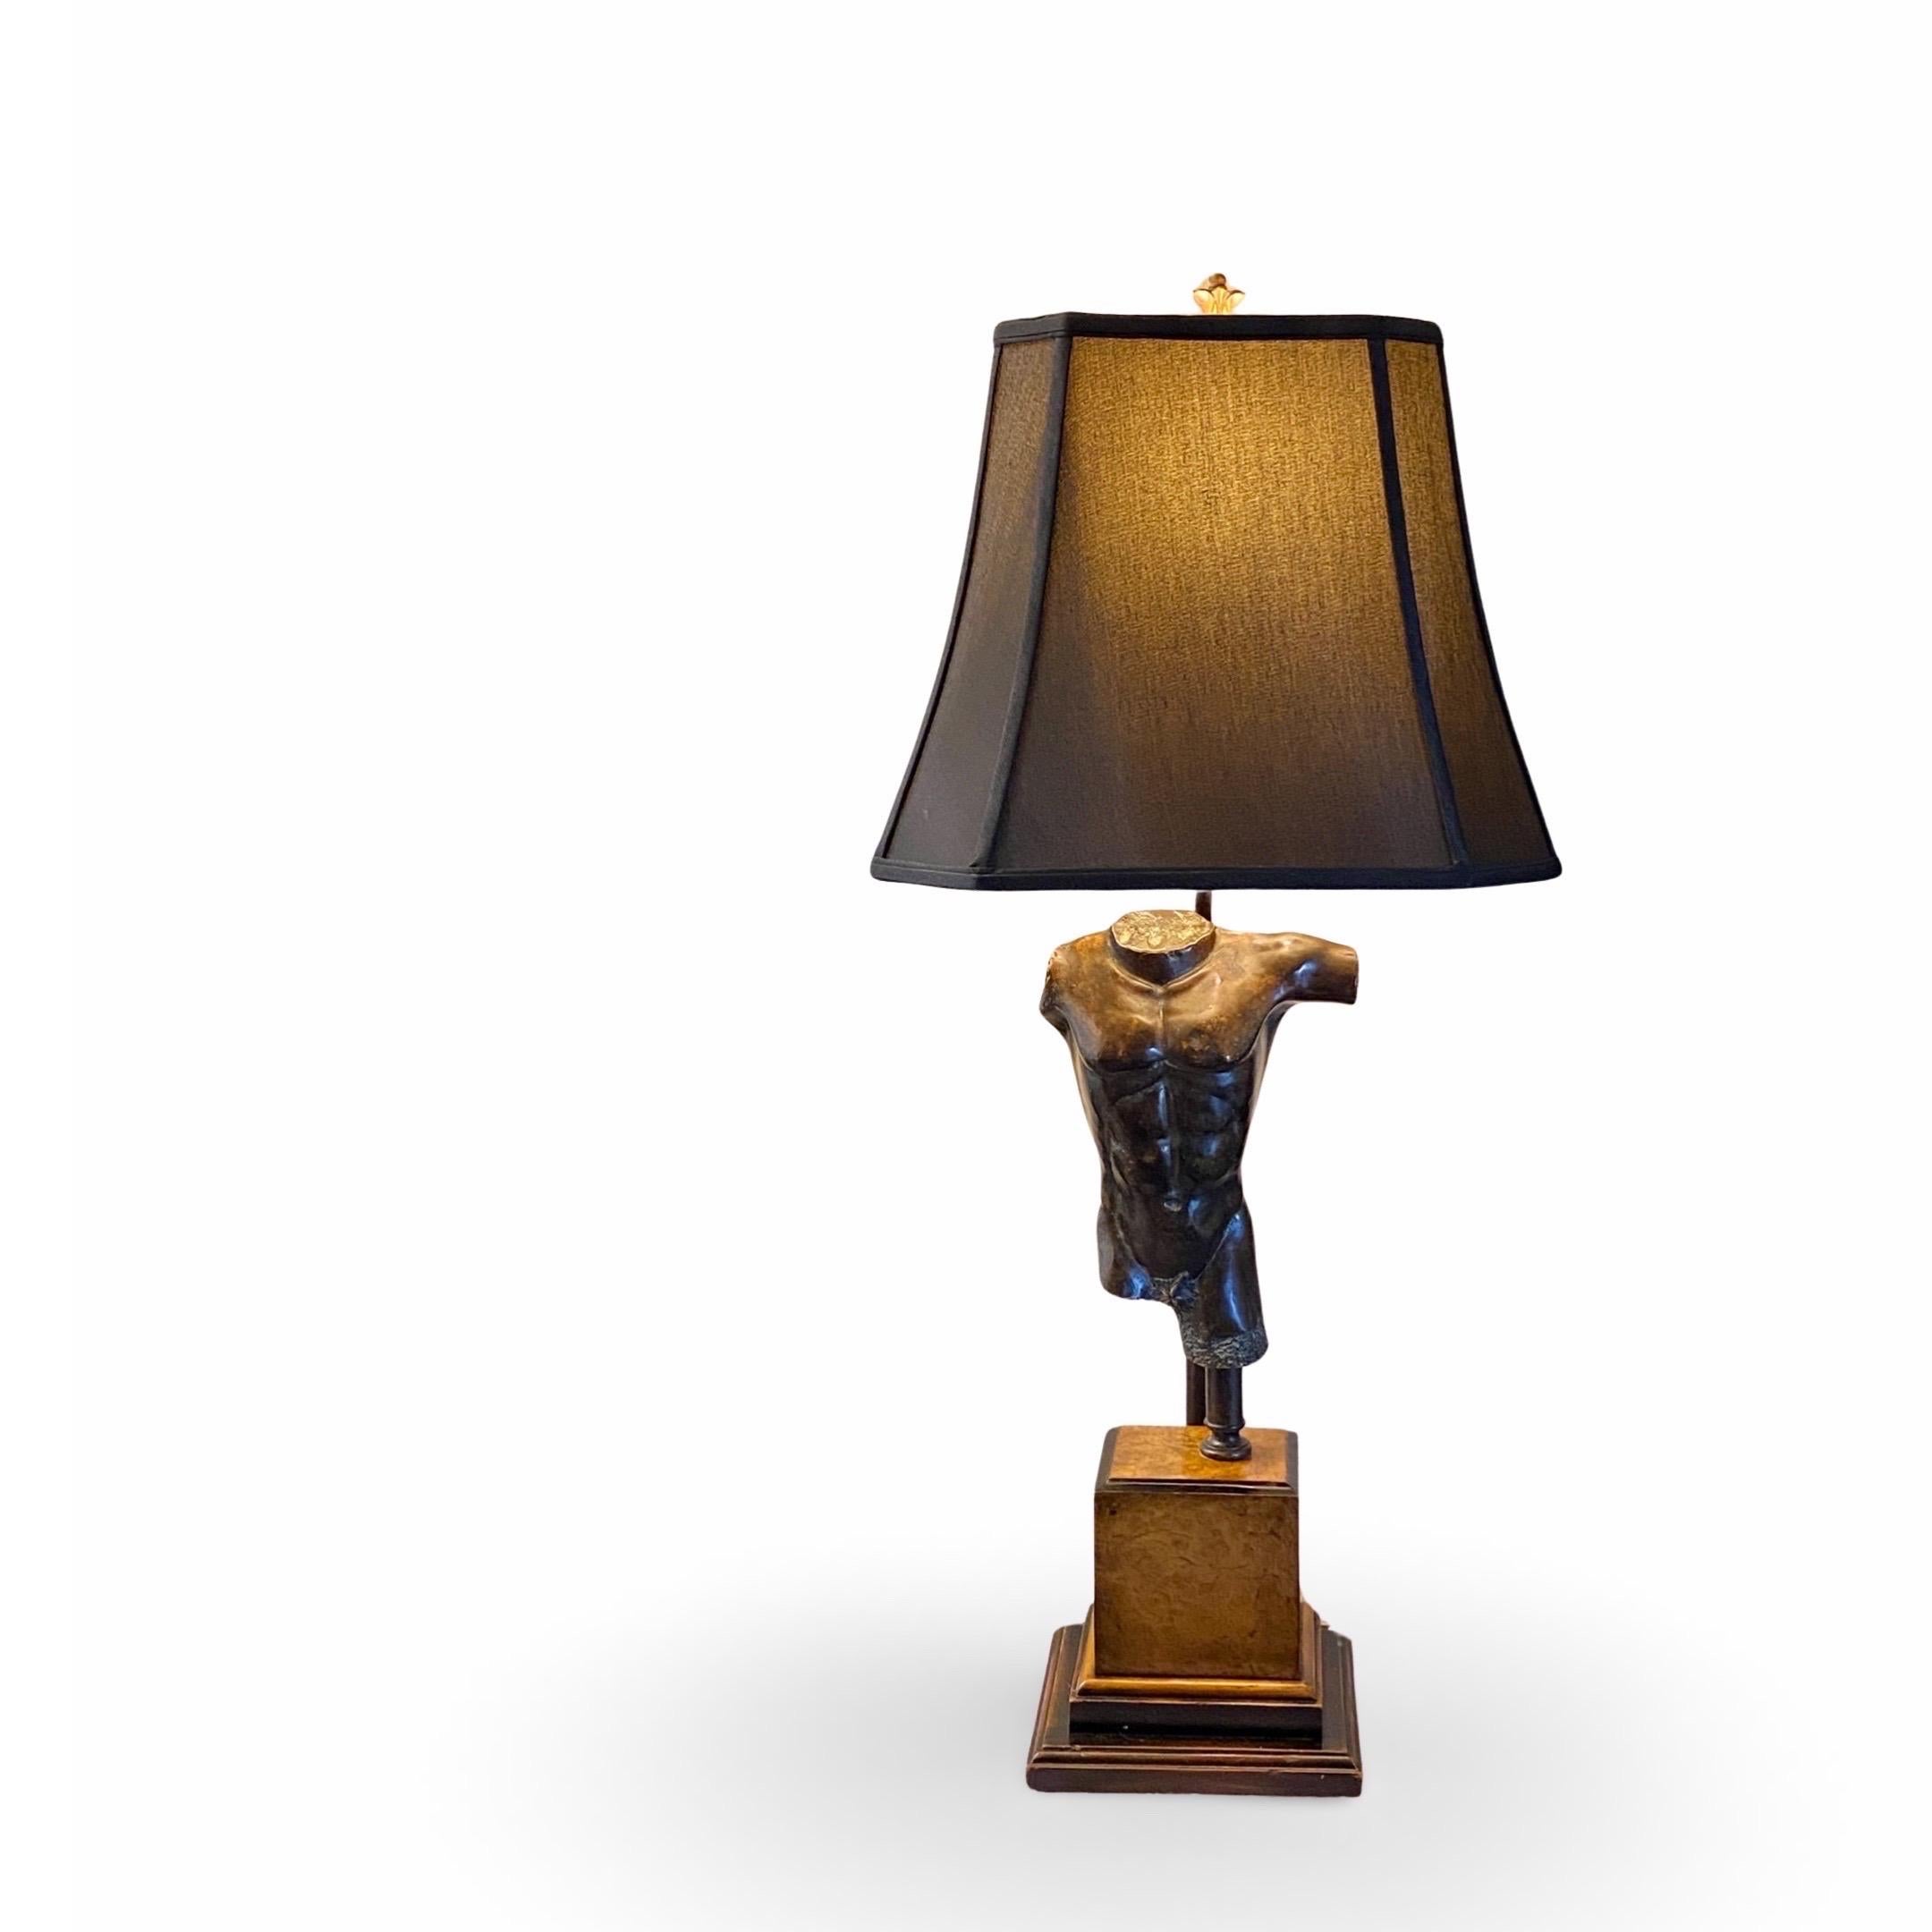 Eine italienische Lampe, die sowohl klassisch als auch modern ist. Eine schicke Bronzestatue auf einem Würfelsockel aus Wurzelholz. Wunderschön gemacht, wie es nur die Italiener können. Wir haben einen schwarzen Stoffschirm bestellt, der wie das